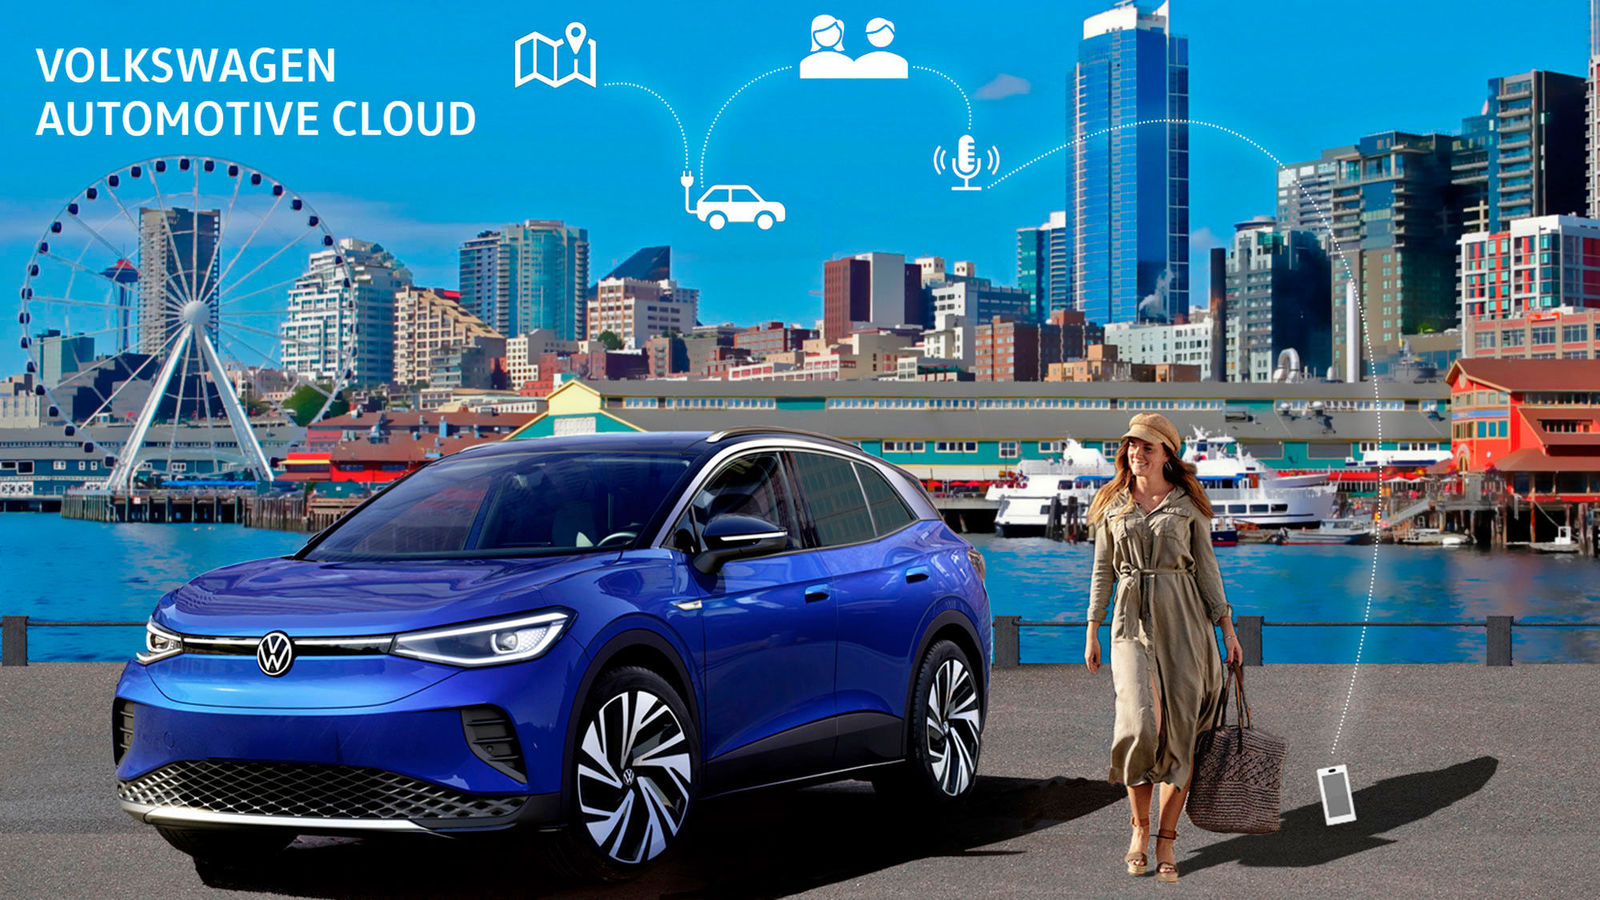 Story "Wie die Volkswagen Automotive Cloud das vernetzte Auto der Zukunft mitgestaltet"